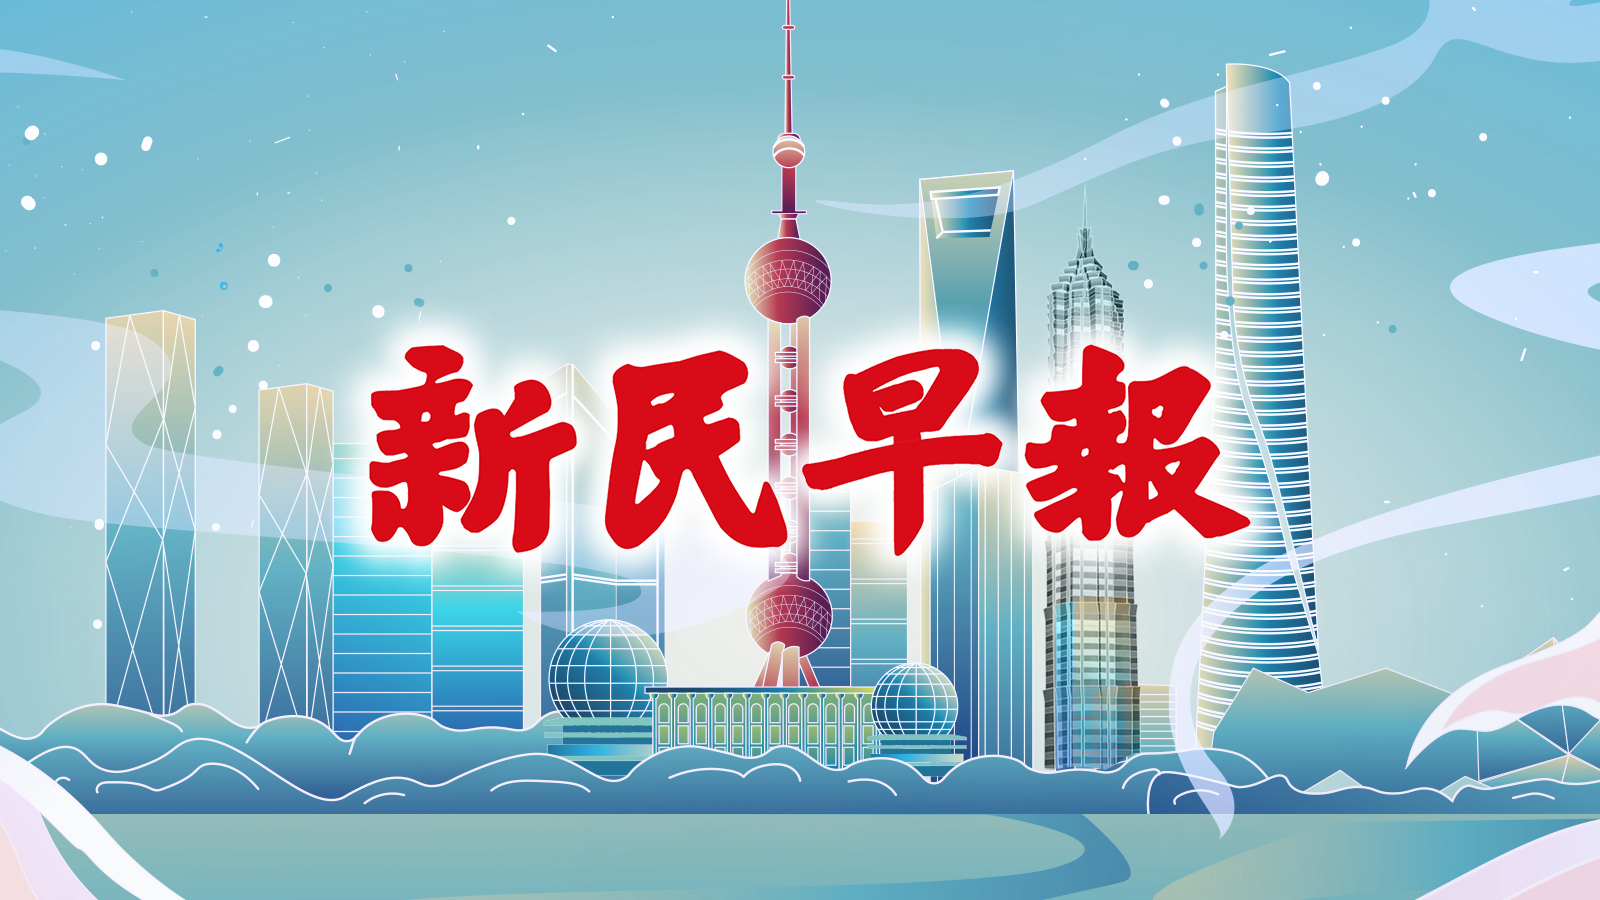 周末40℃返场，好消息是下周真要退烧了；快报名！上海将发10亿元电子消费券，在线报名摇号中签 | 新民早报[2022.8.18]